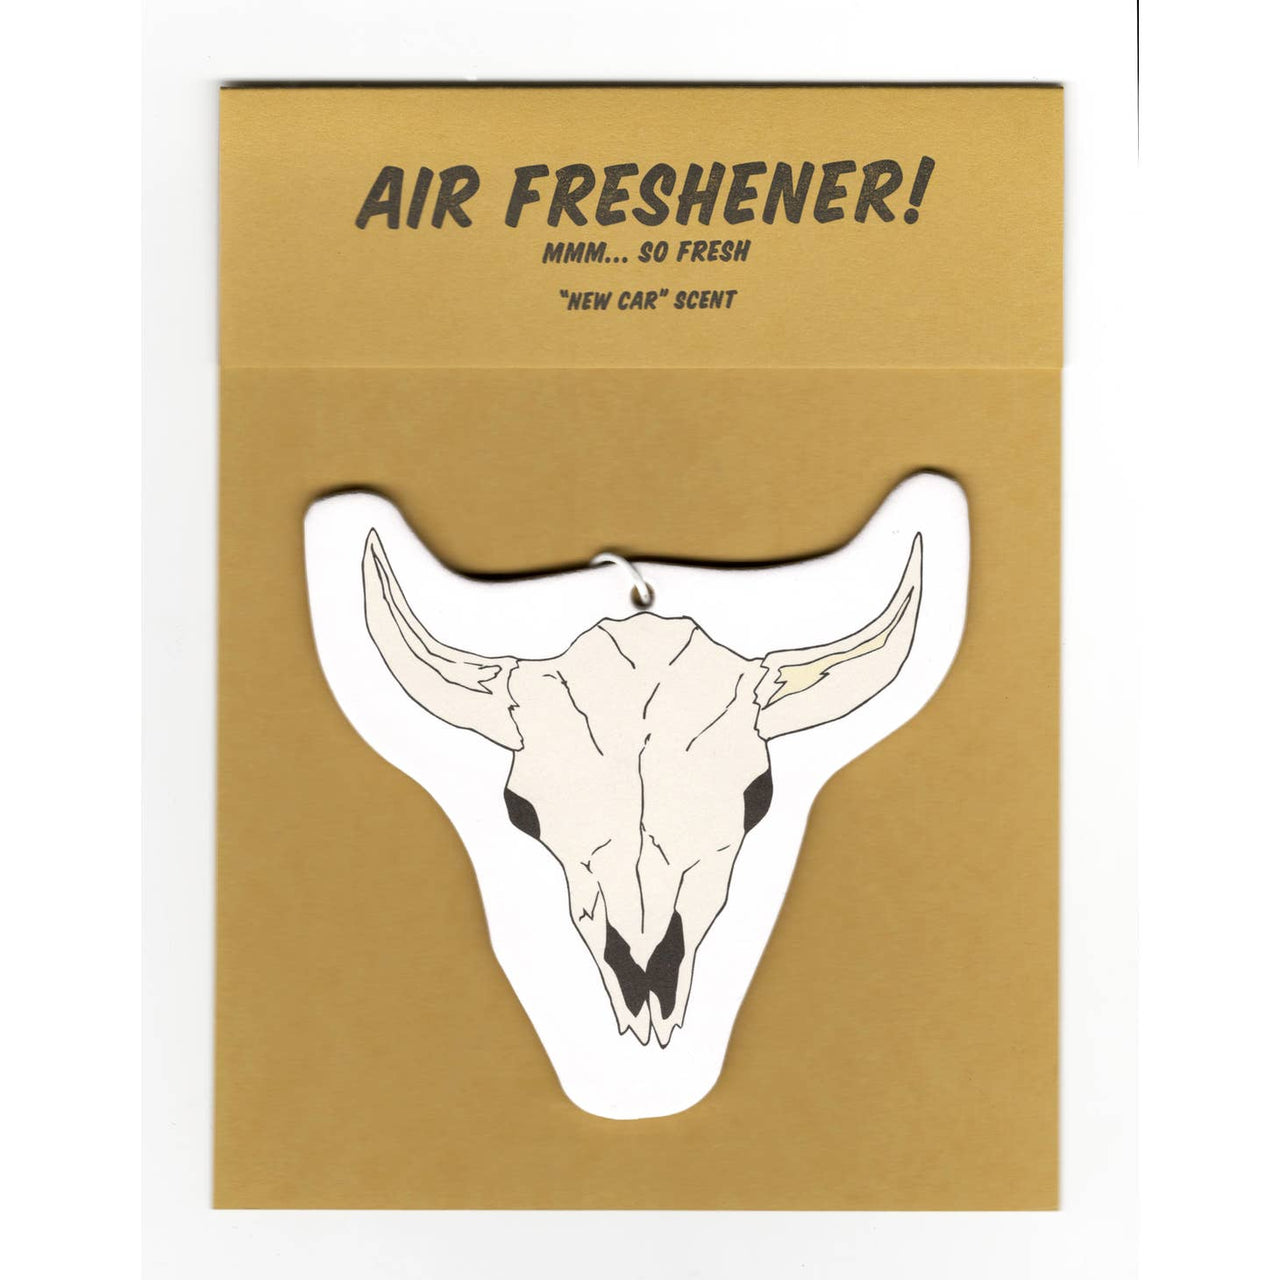 Power & Light Press - Air Freshener - Skull (New Car Scented)